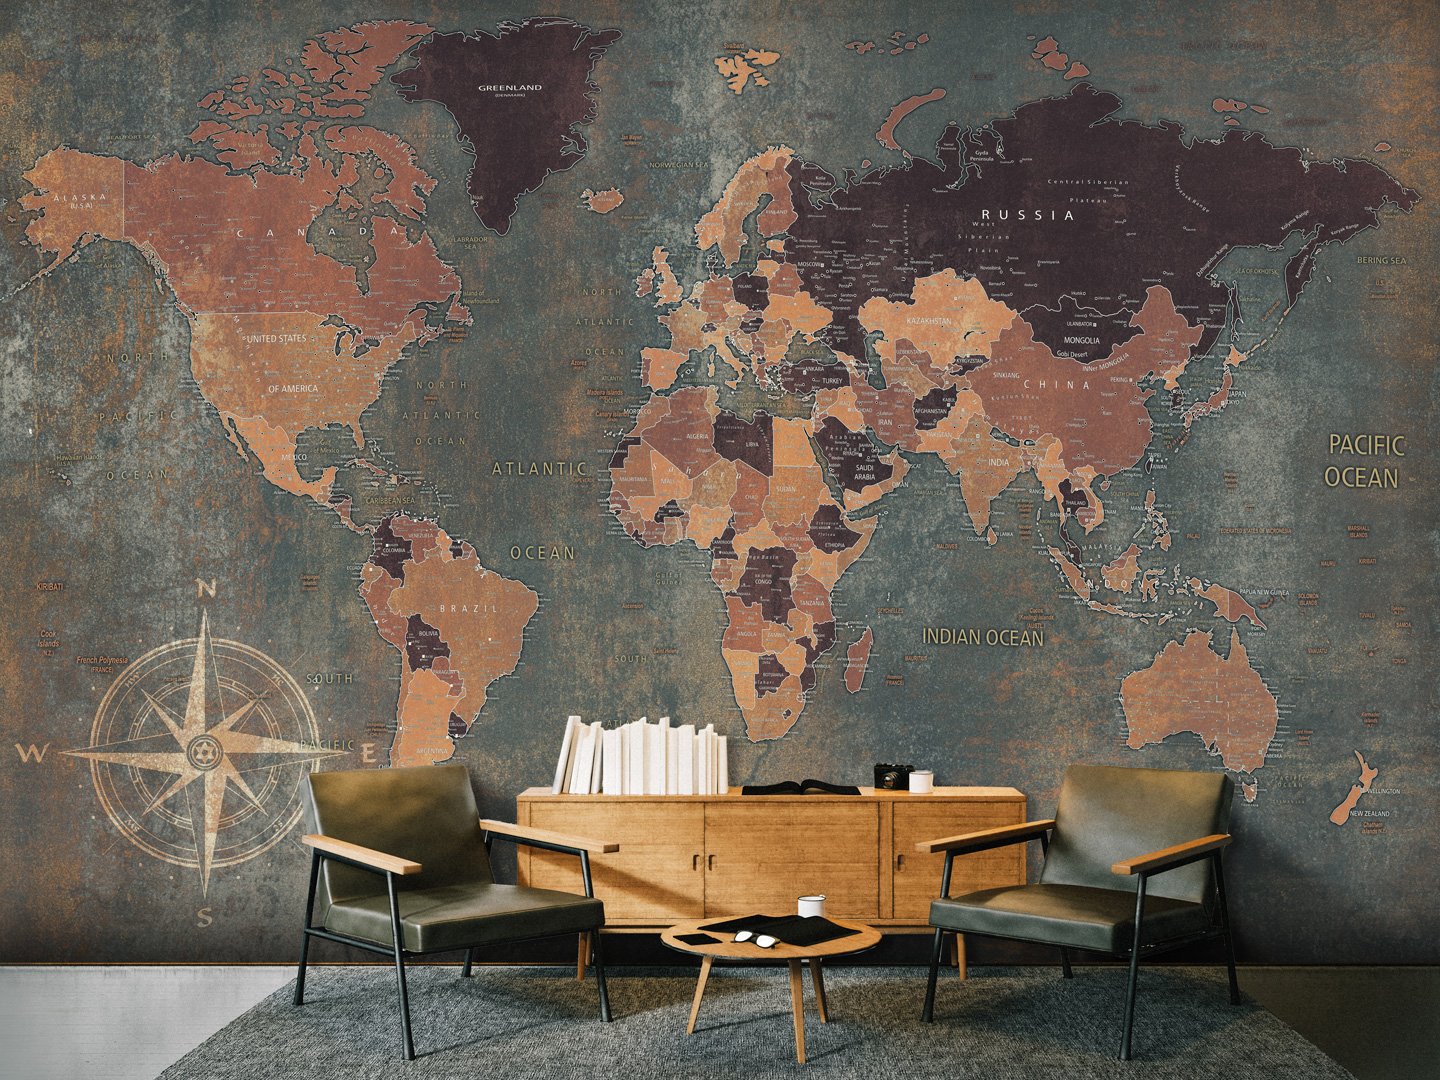 Фотообои карта мира на стену в интерьере